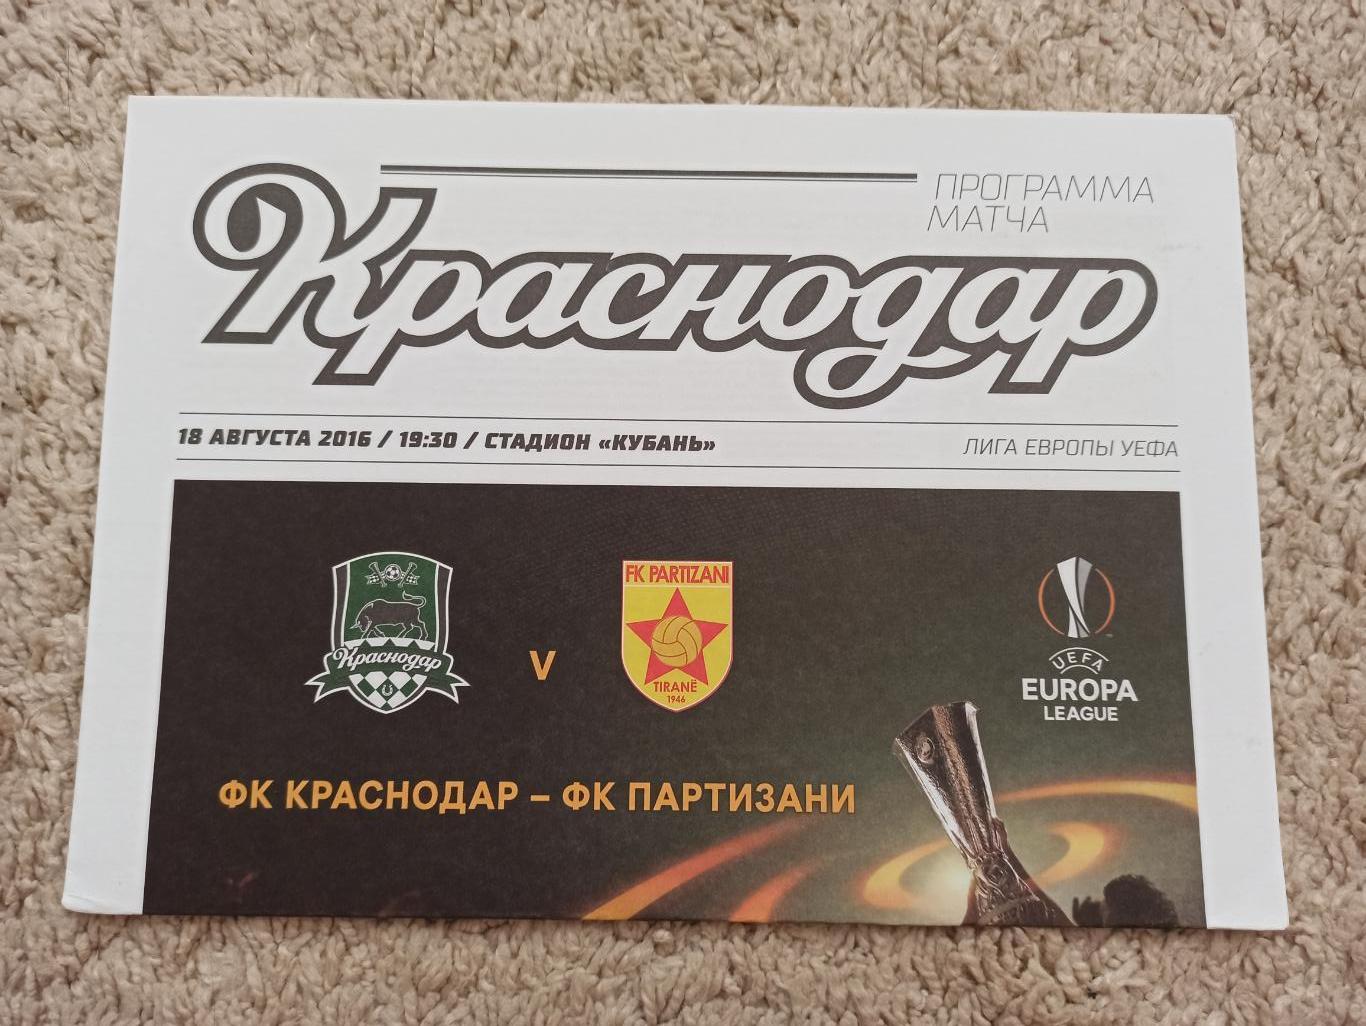 Еврокубки, Лига Европы, 2016г, ФК Краснодар - Партизани (Албания)